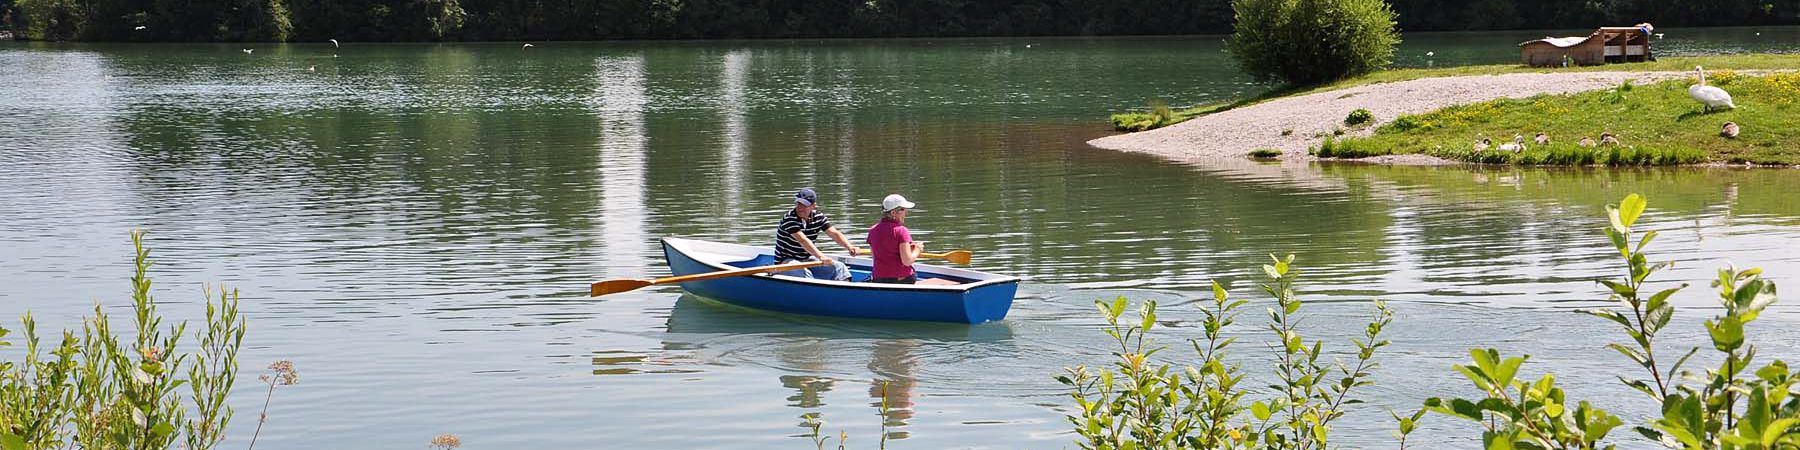 Ruderboot fahren auf dem Lechsee im Allgäu